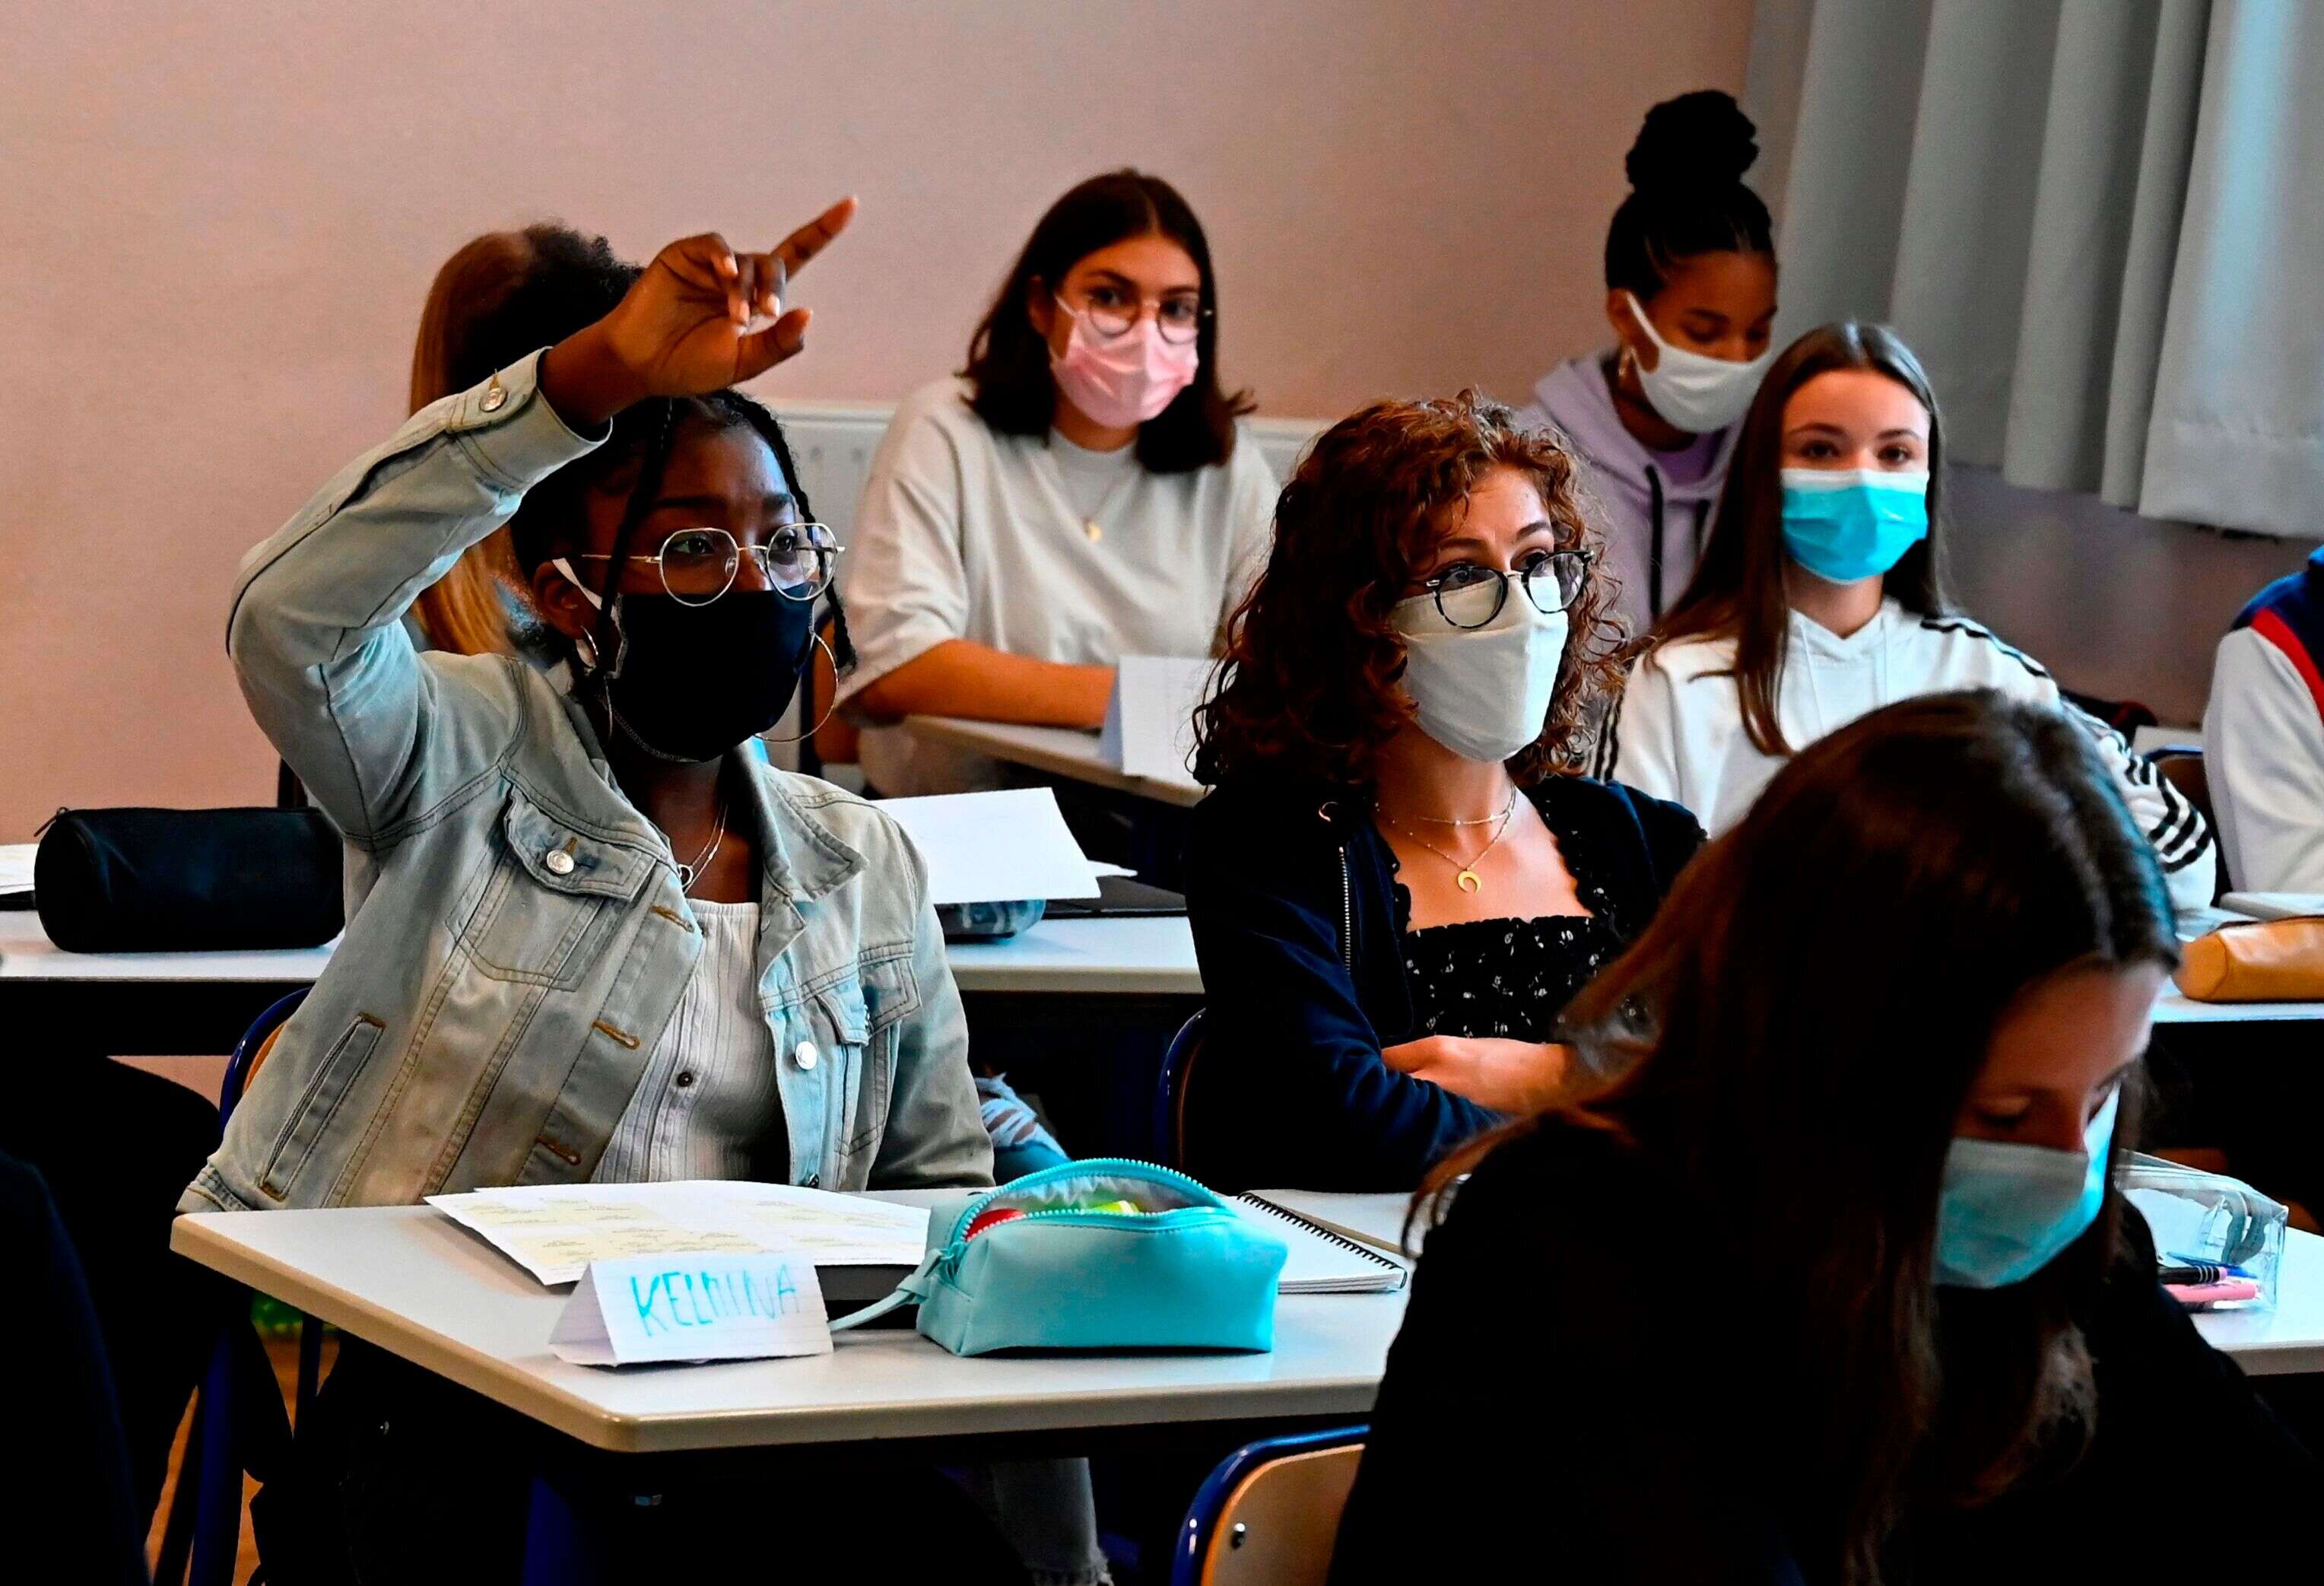 À partir de ce 8 février 2021, les masques artisanaux sont interdits dans les établissements scolaires français, du primaire au lycée, et ce pour les élèves comme les personnels enseignants (image d'illustration prise en septembre 2020 dans un lycée de Rennes).